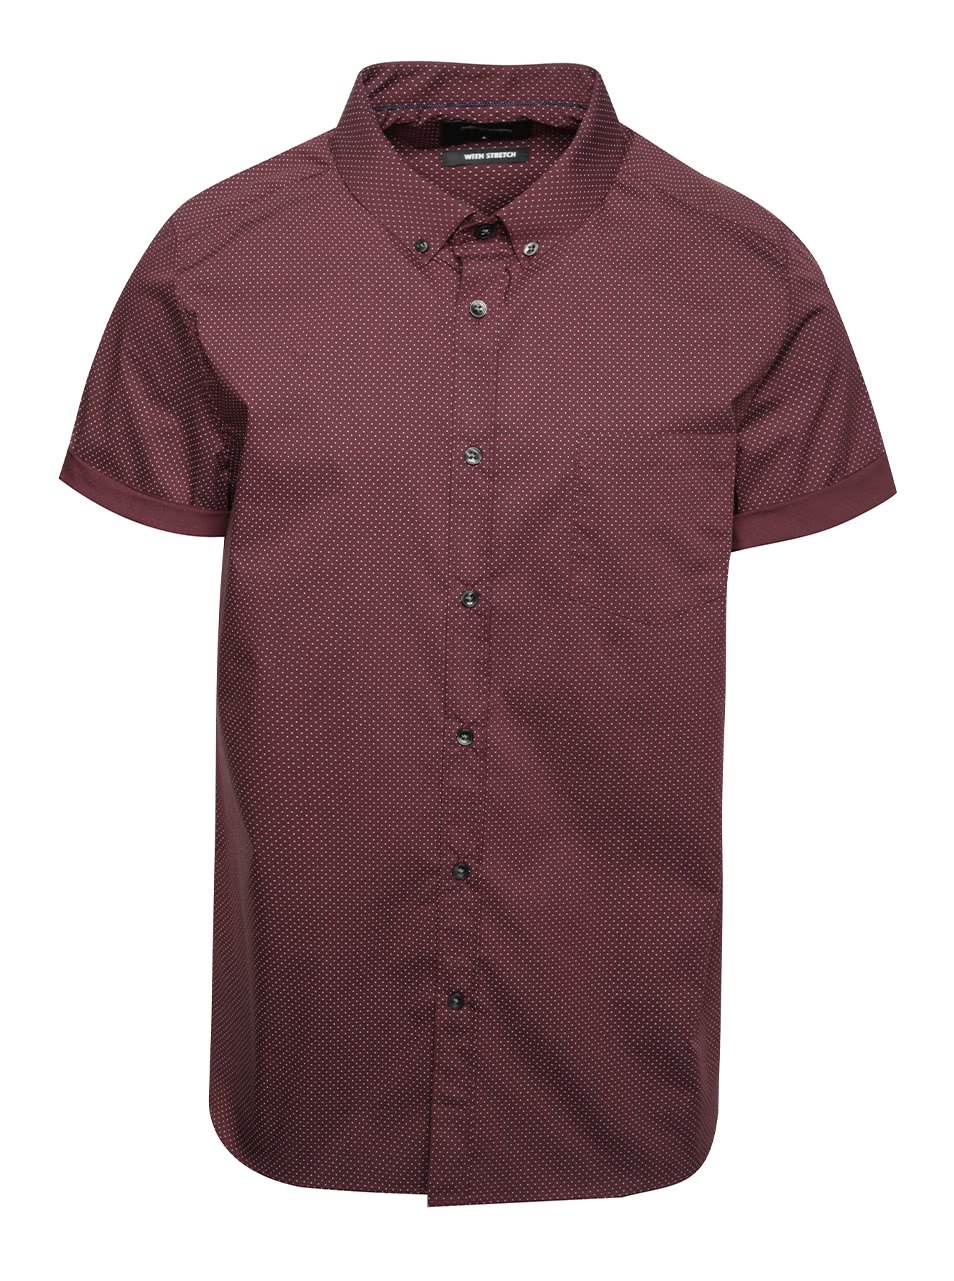 Vínová puntíkovaná košile s krátkým rukávem Burton Menswear London